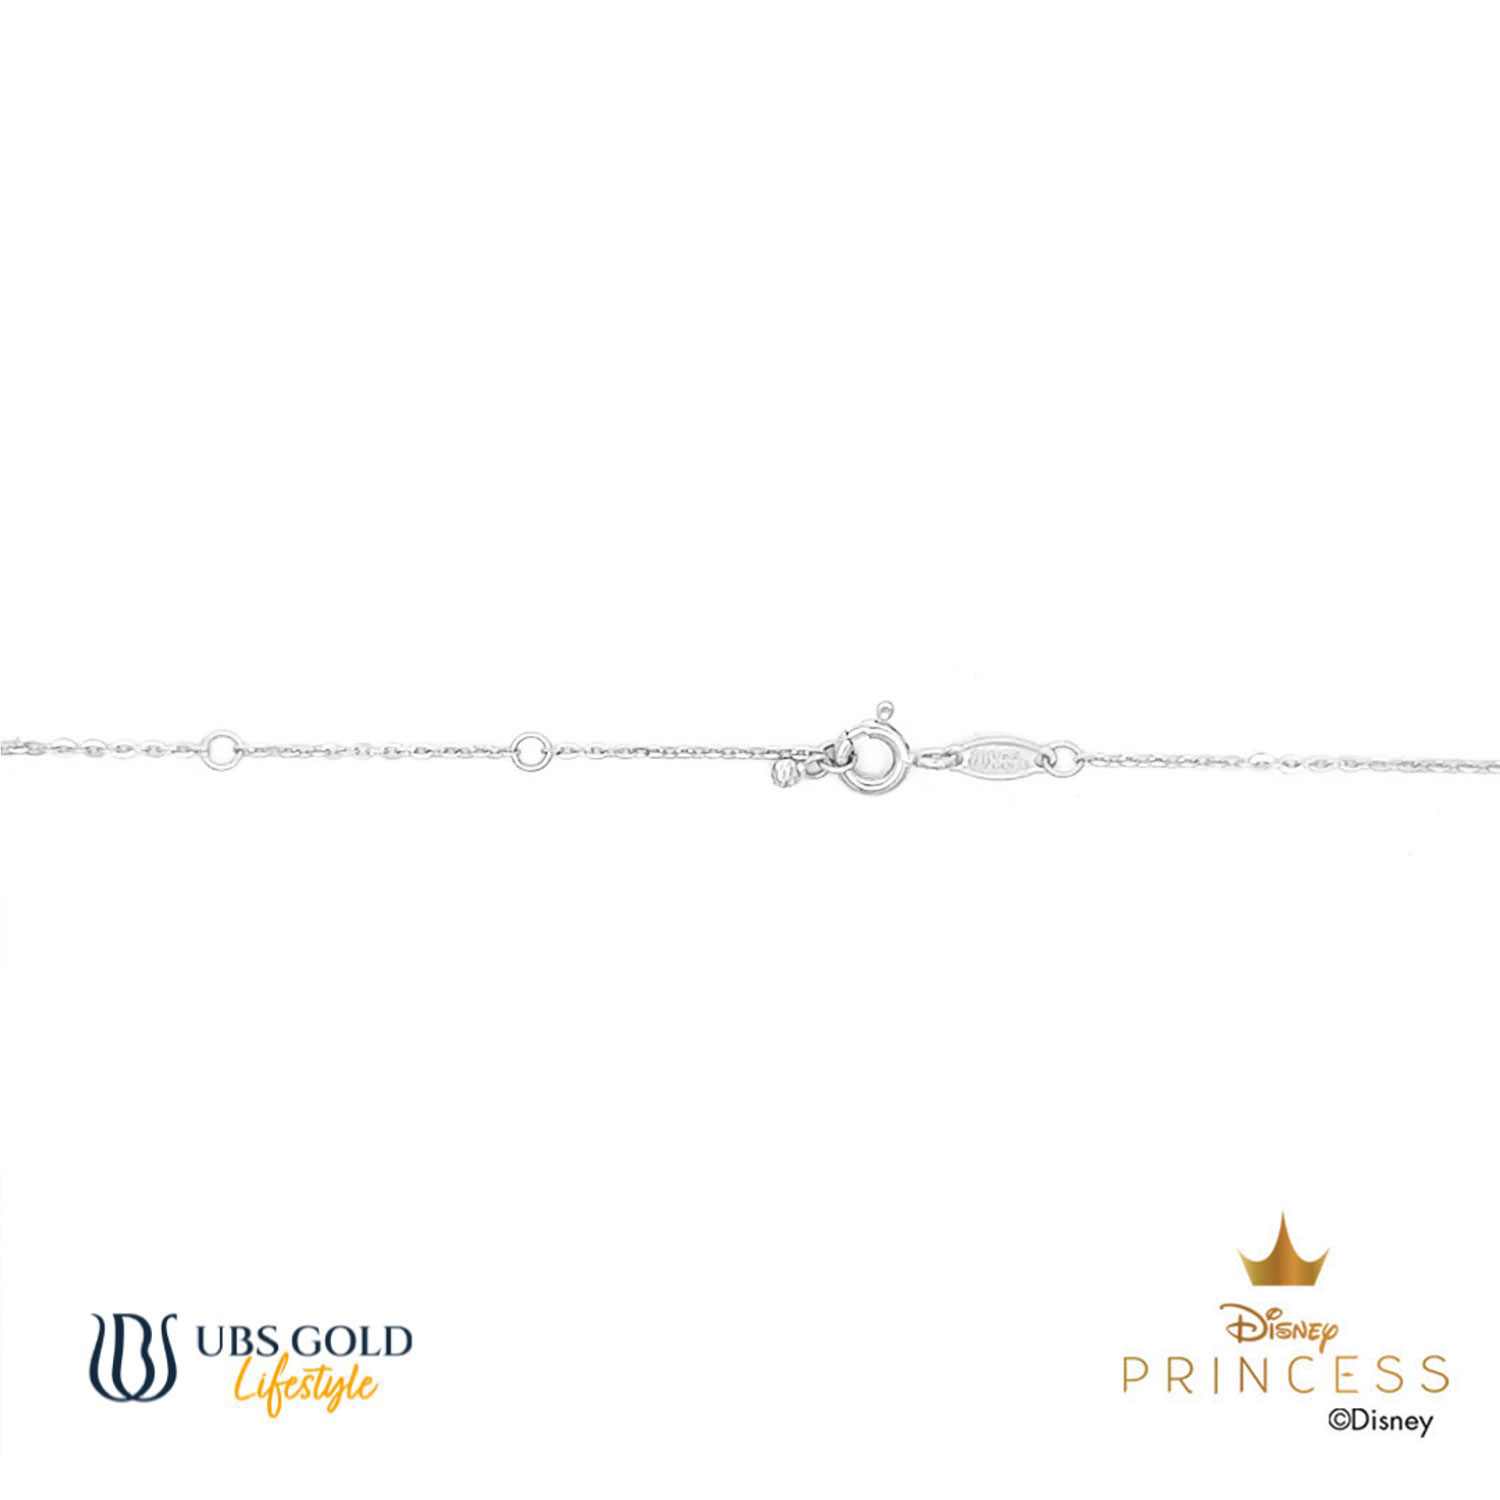 UBS Gold Kalung Emas Disney Princess Belle - Kky0450 - 17K